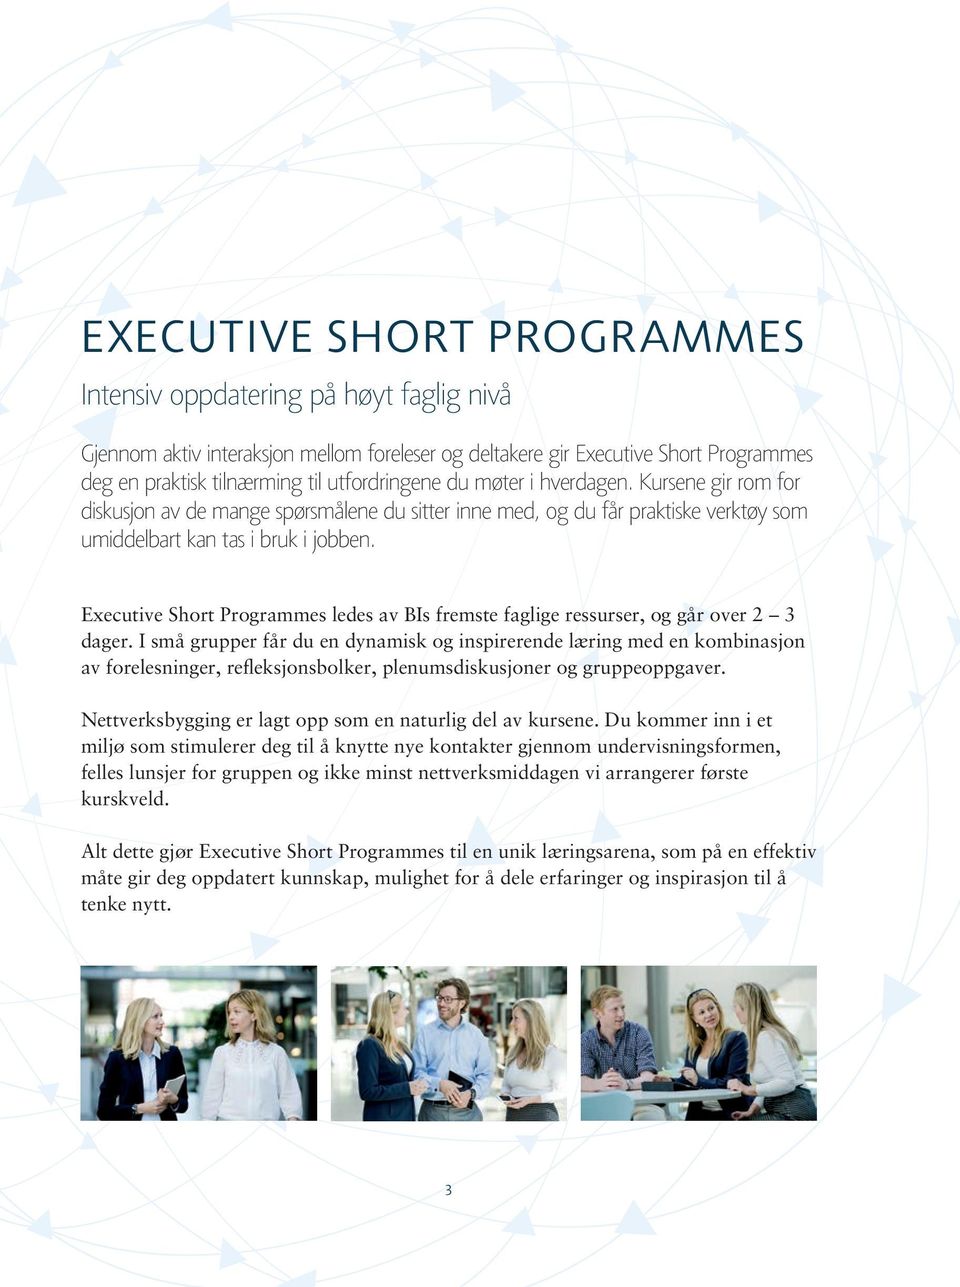 Executive Short Programmes ledes av BIs fremste faglige ressurser, og går over 2 3 dager.